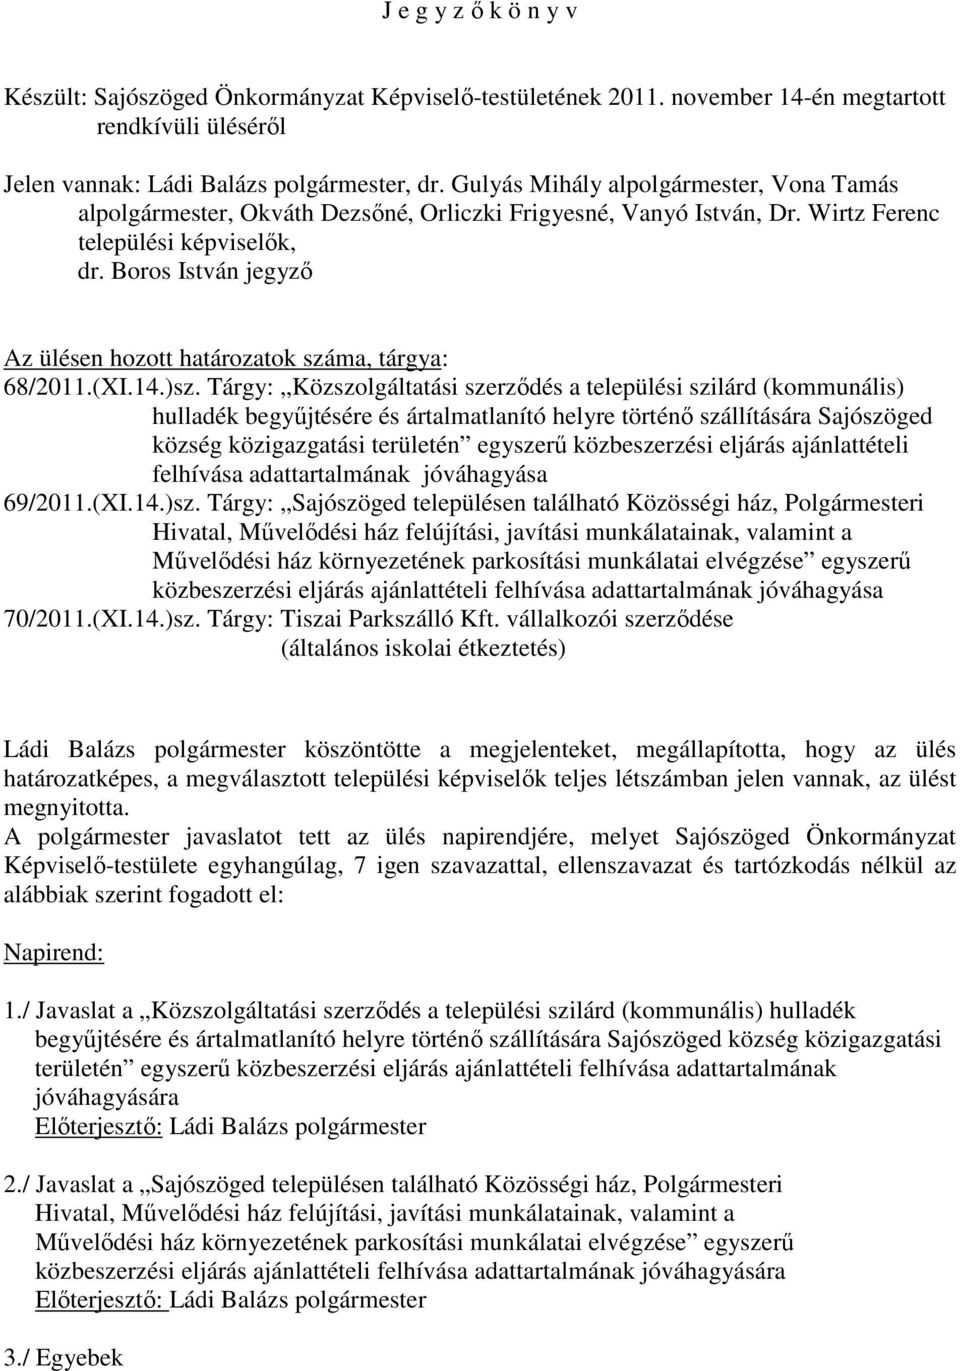 Boros István jegyzı Az ülésen hozott határozatok száma, tárgya: 68/2011.(XI.14.)sz.